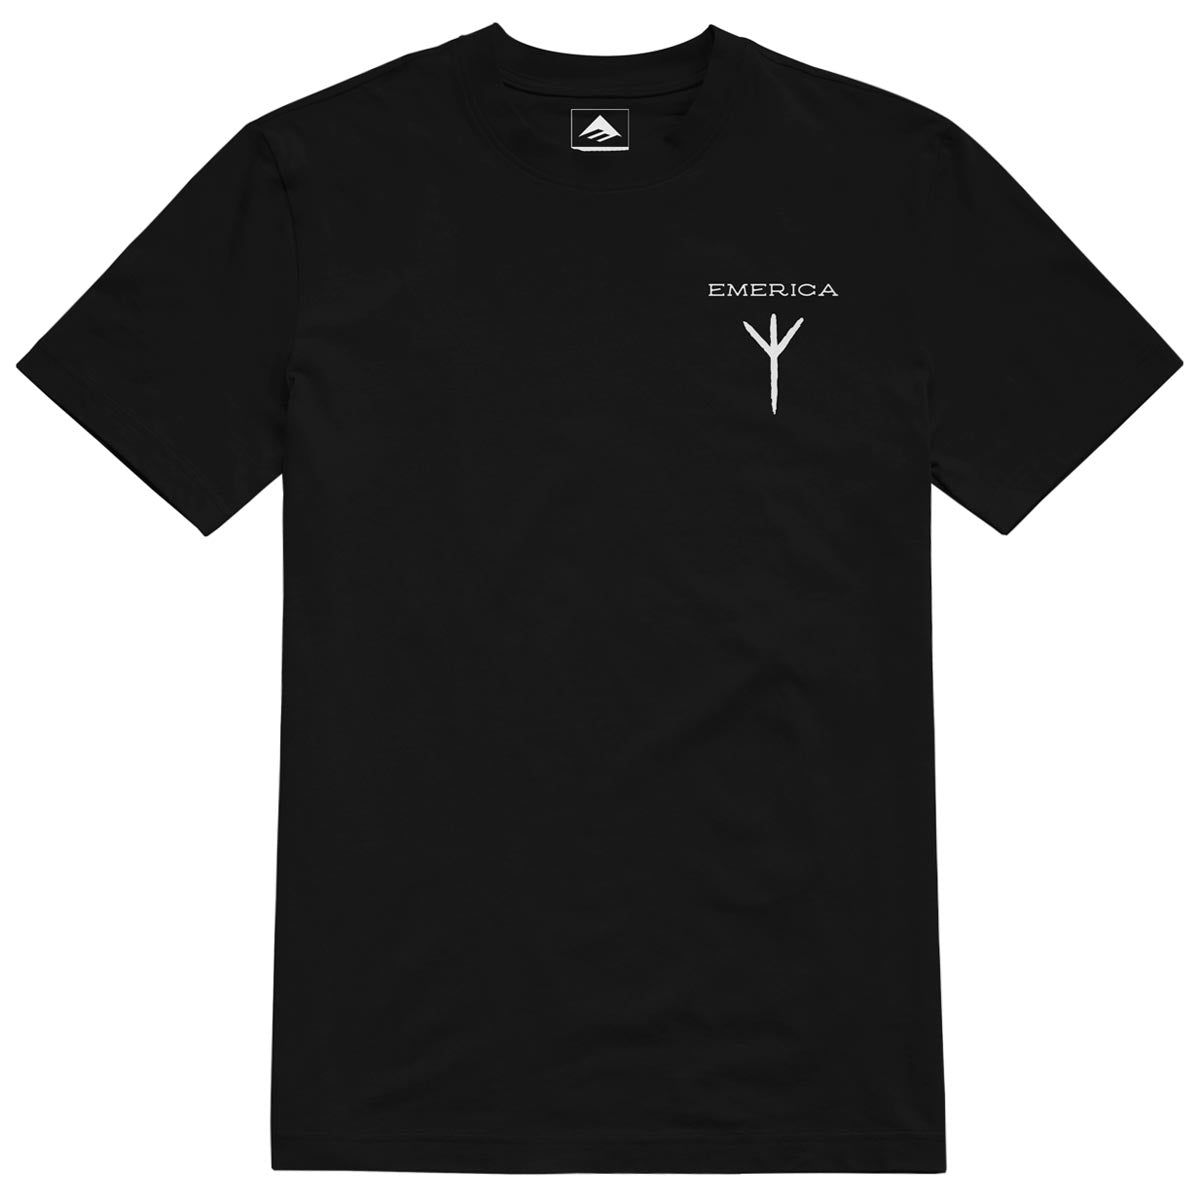 Emerica Baekkel T-Shirt - Black image 1